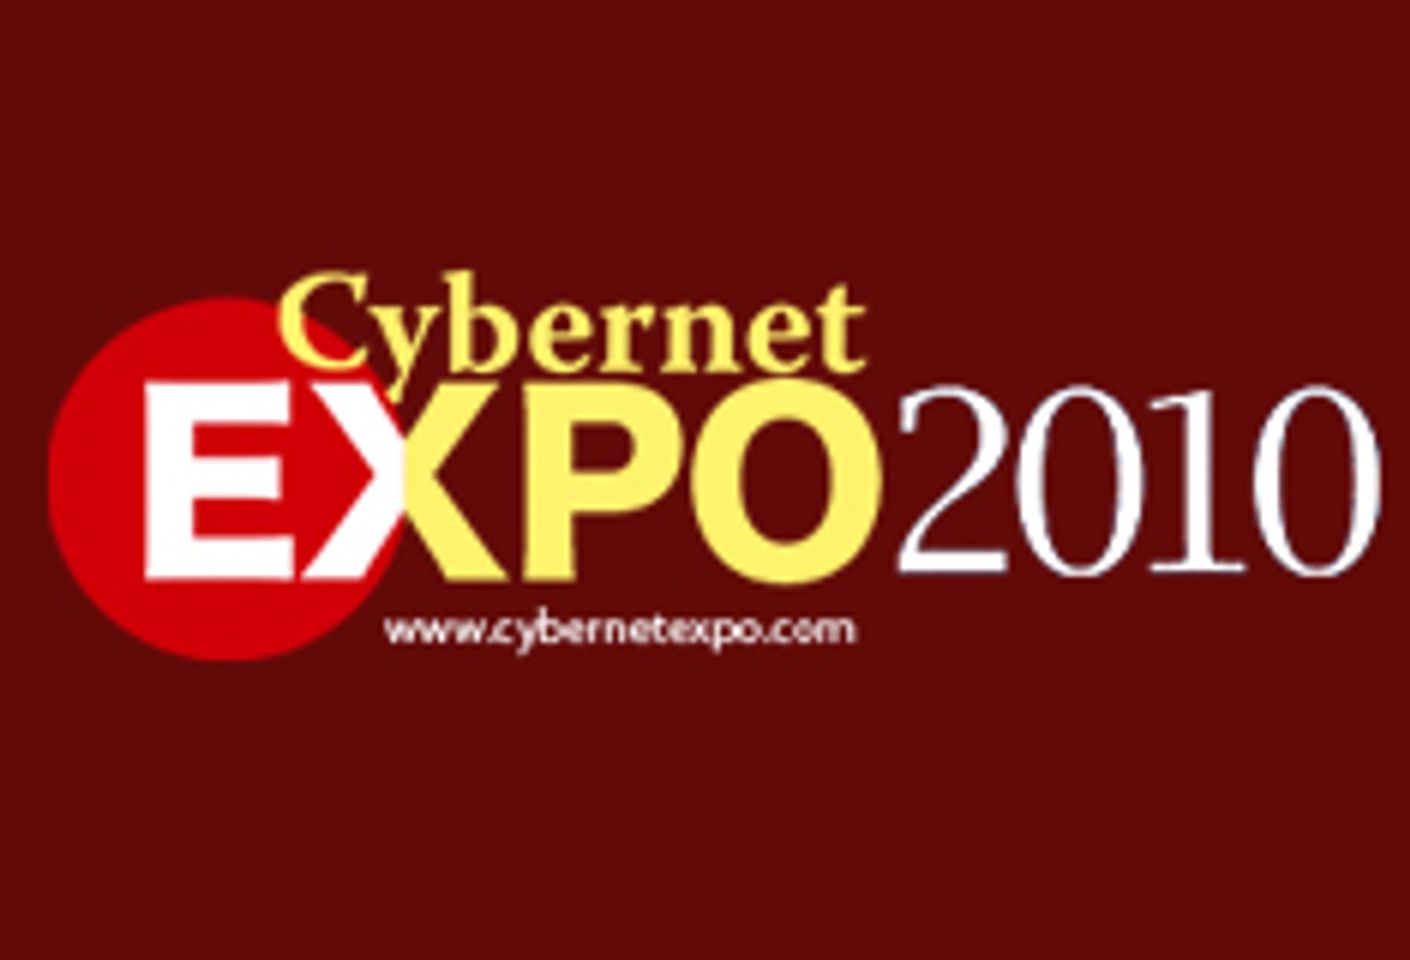 Cybernet Expo, eMerchantPay Announce 'Roaring 20's Casino' Party